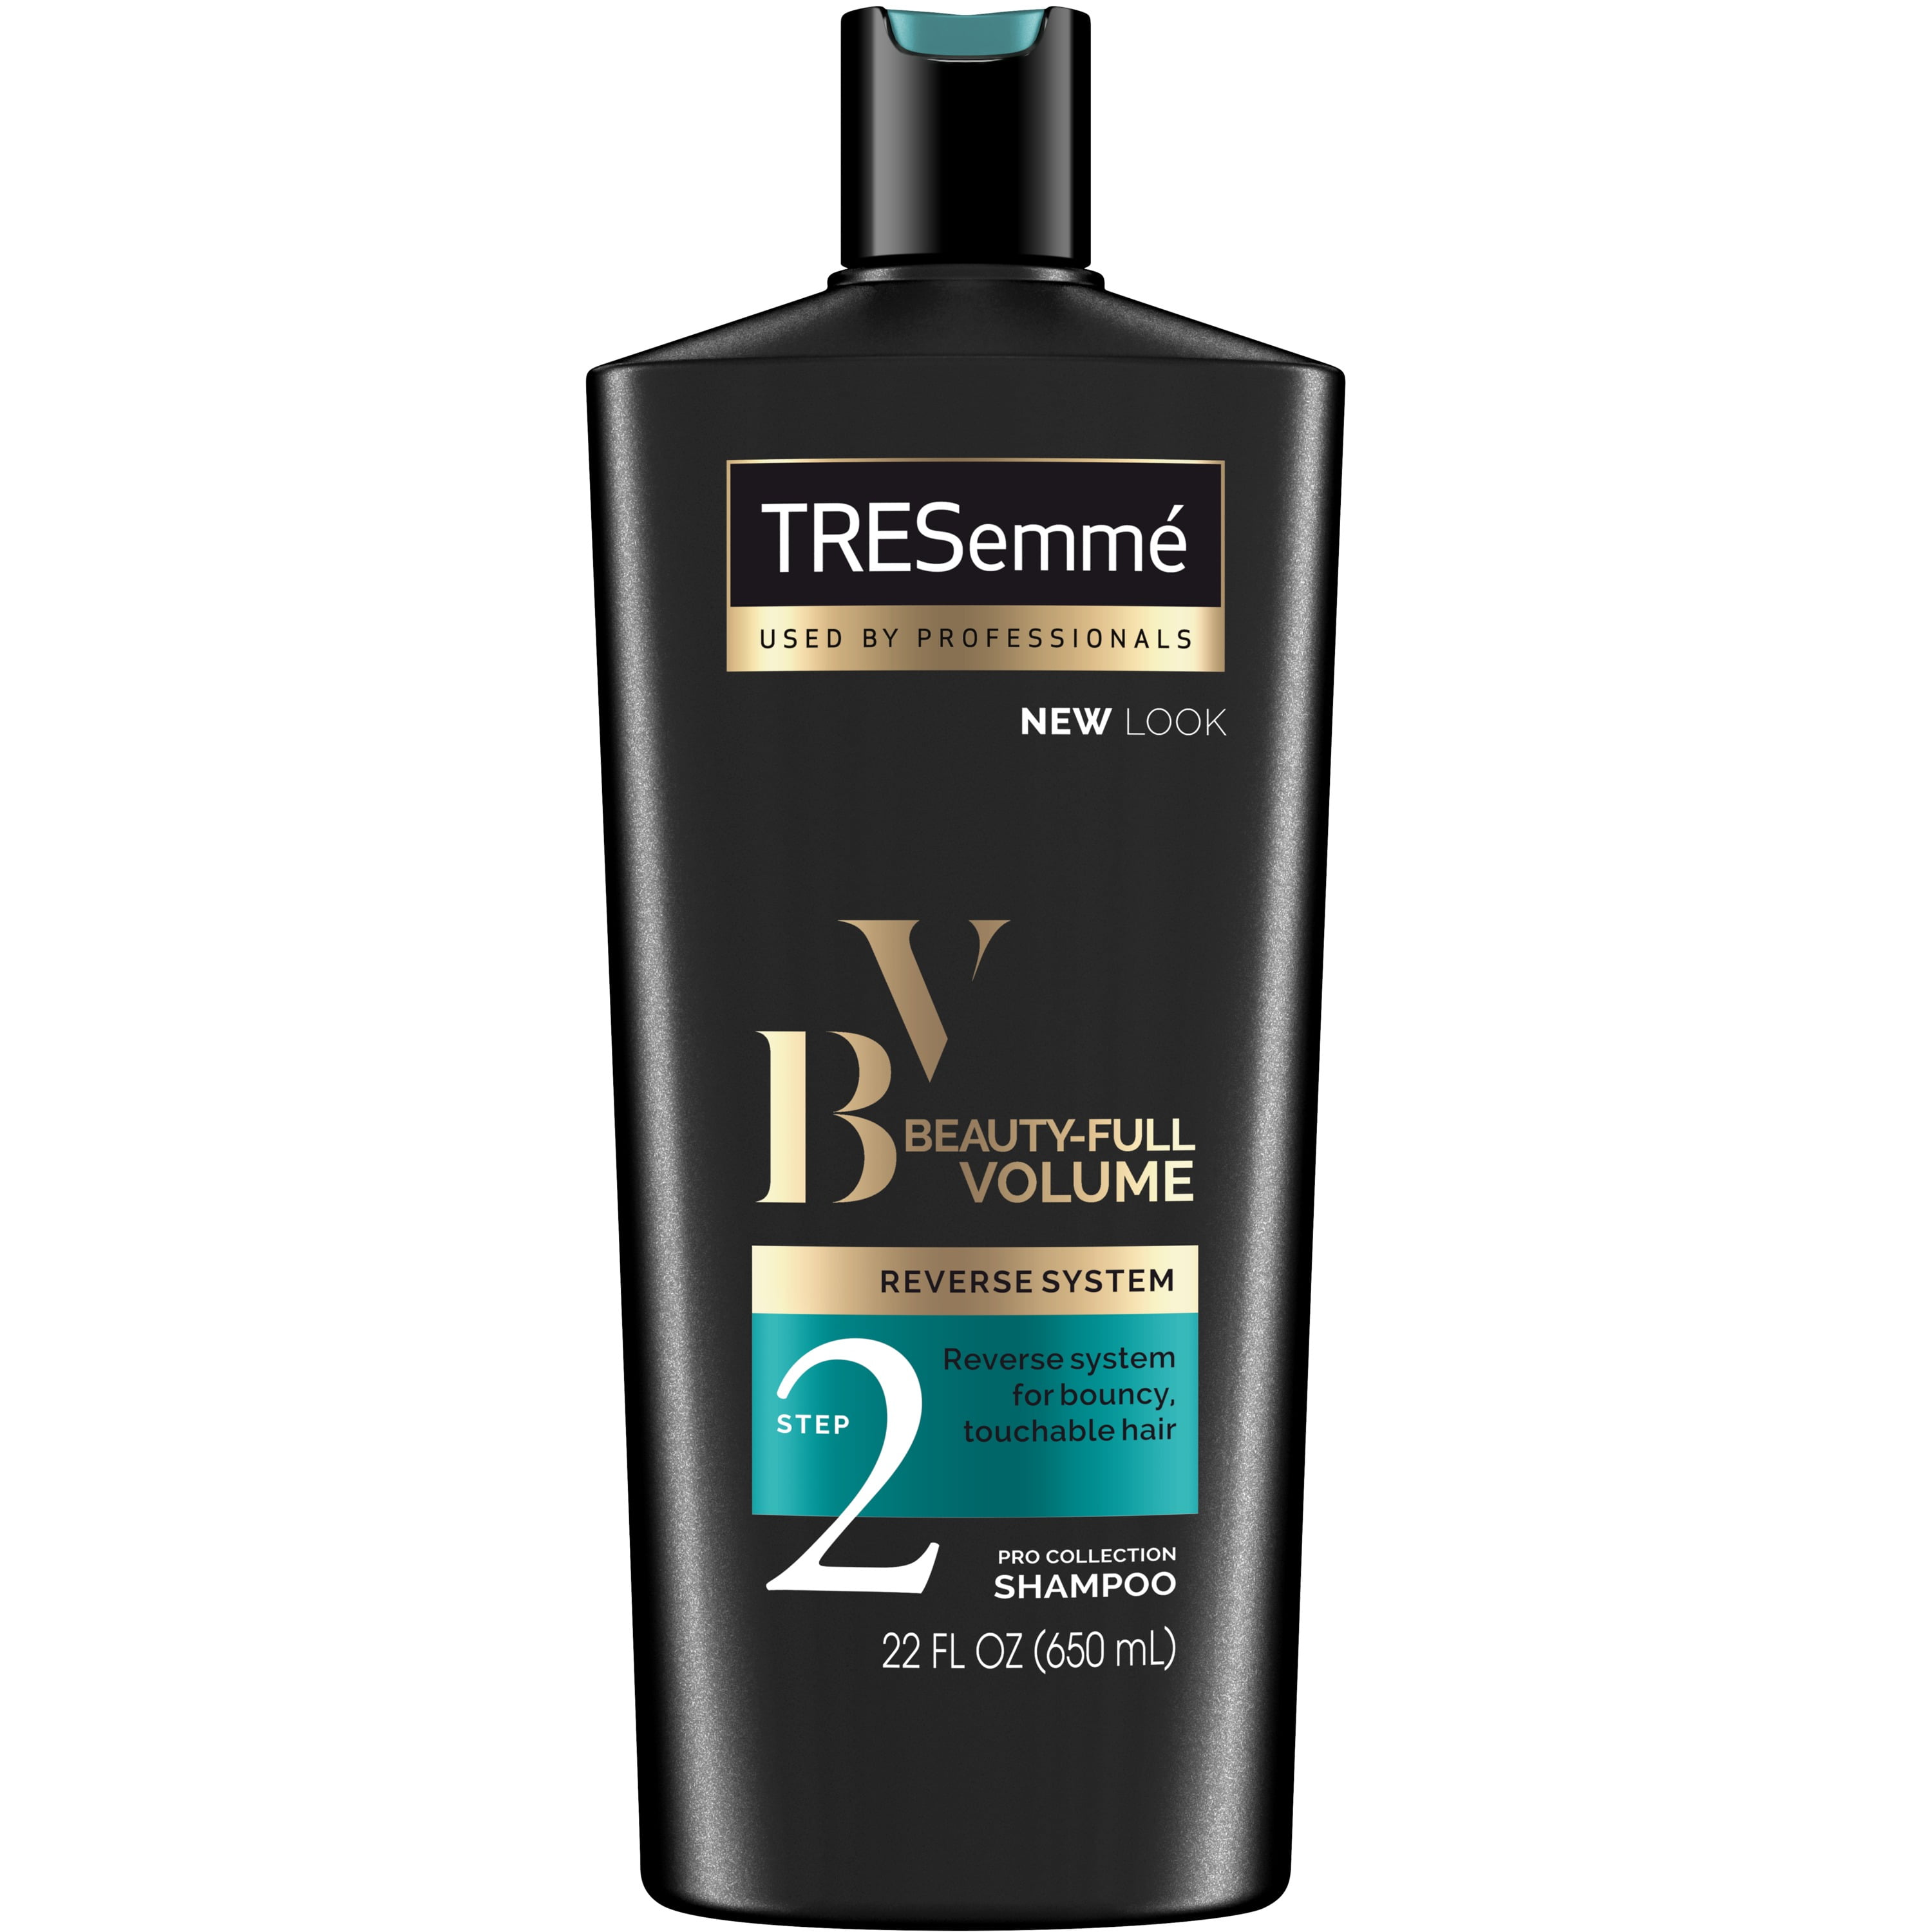 tema velsignelse våben Tresemme Pro Collection Shampoo - Beauty-Full Volume Reverse System - Step  2 - Net Wt. 22 FL OZ (650 mL) Per Bottle - Pack of 2 Bottles - Walmart.com